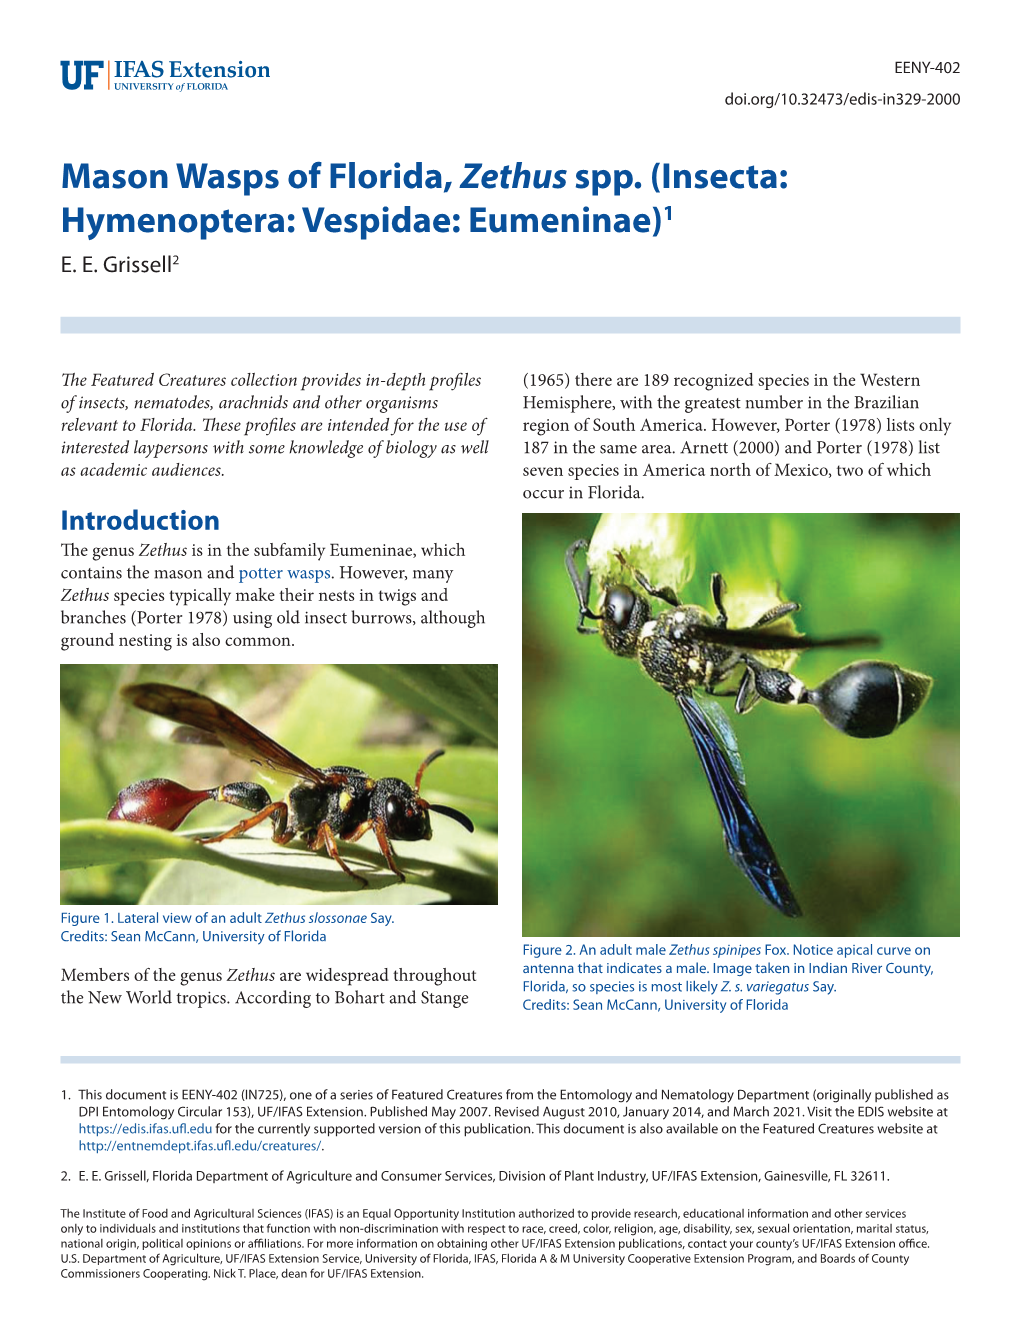 Mason Wasps of Florida, Zethus Spp. (Insecta: Hymenoptera: Vespidae: Eumeninae)1 E